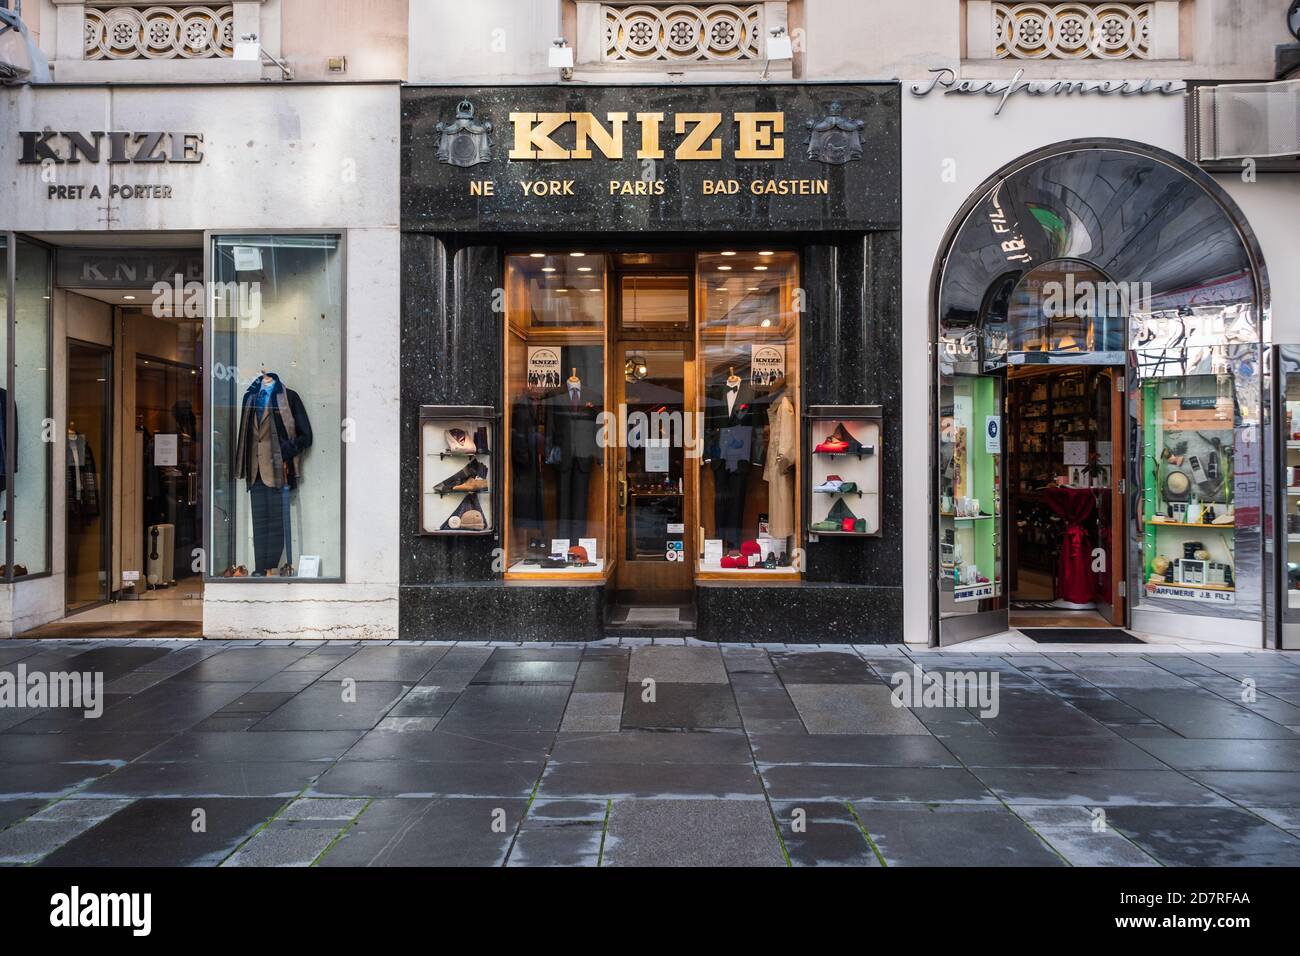 Vienne, Autriche - octobre 25 2020: Knize et Comp Tailor and Clothing Store Front conçu par Adolf Loos avec des fenêtres sur la rue Graben. Banque D'Images